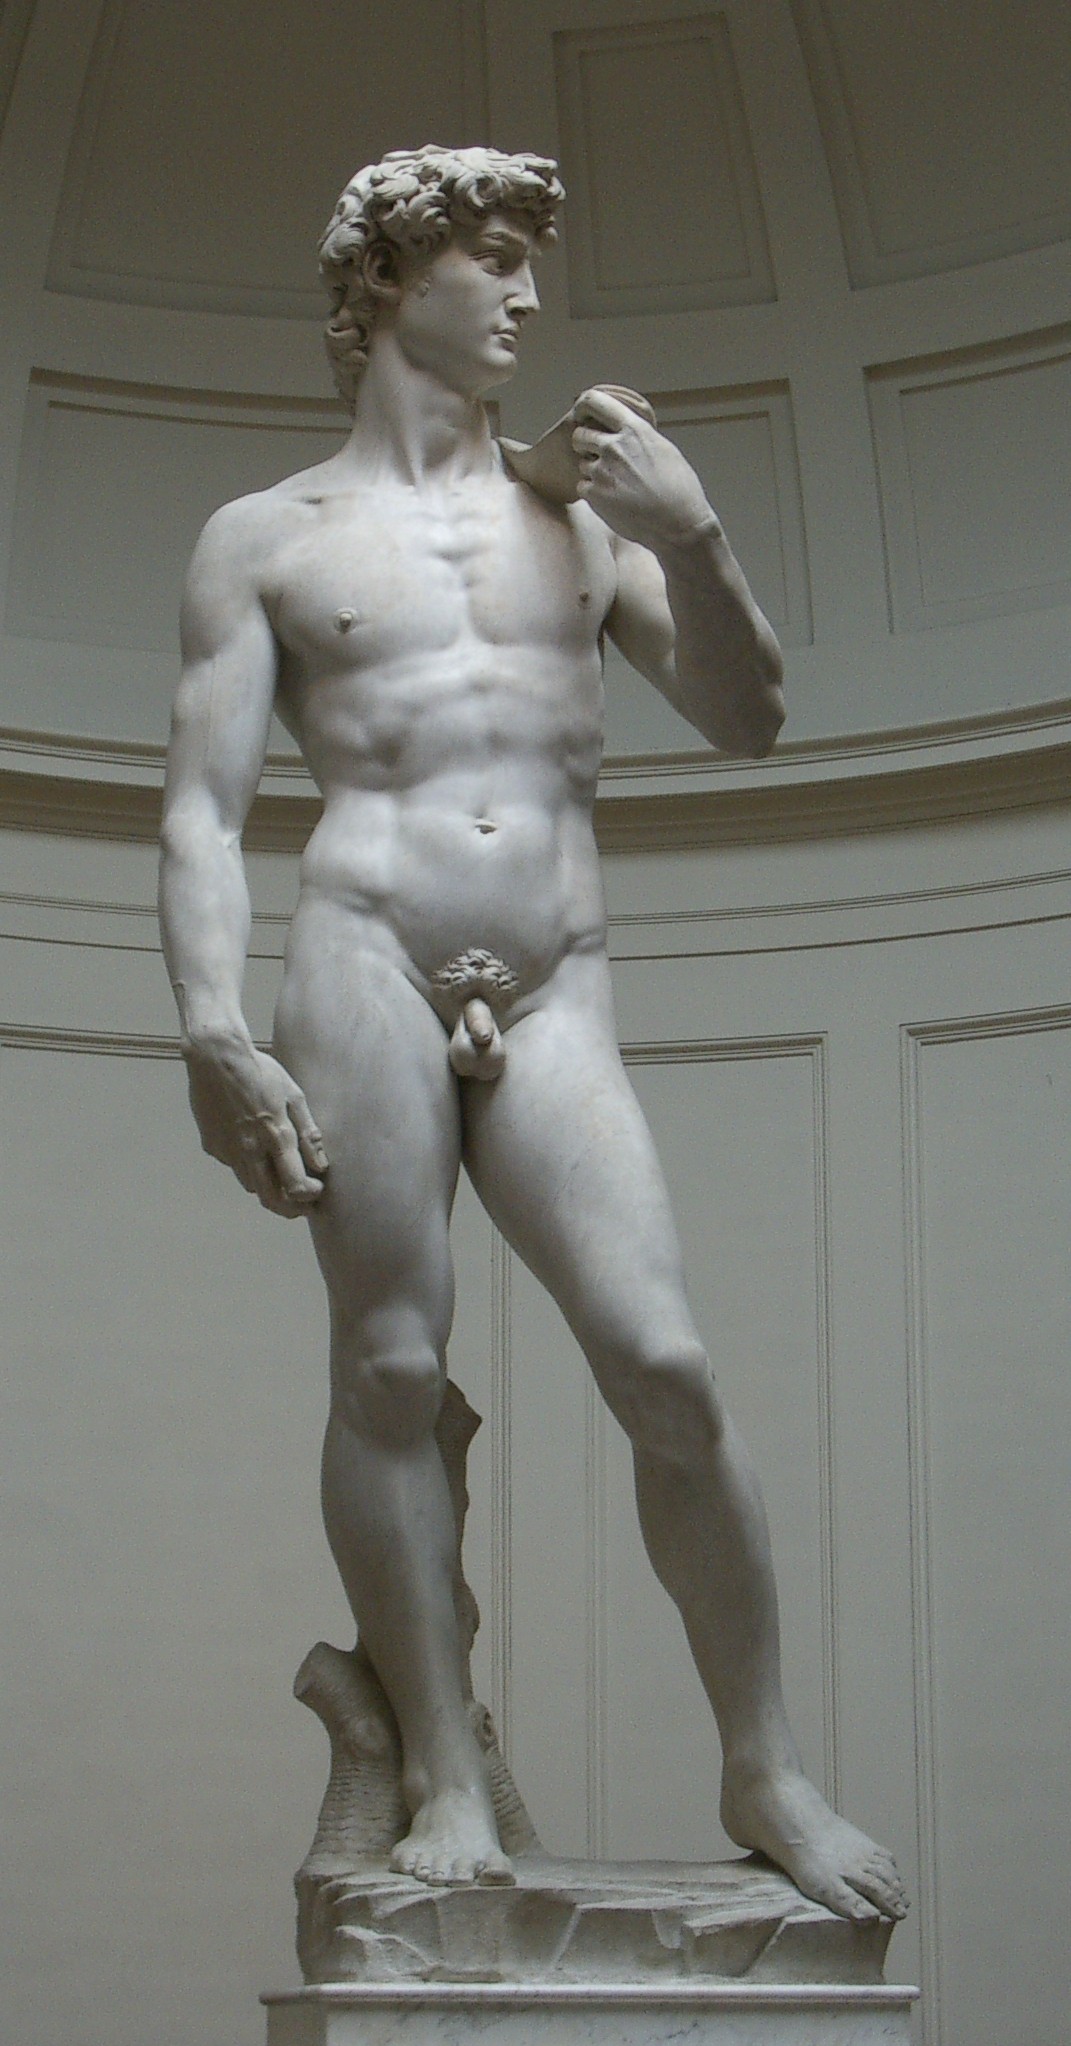 David by  Michelangelo - 1501–04 - 4.34 x 5.17 m Accademia di Belle Arti di Firenze